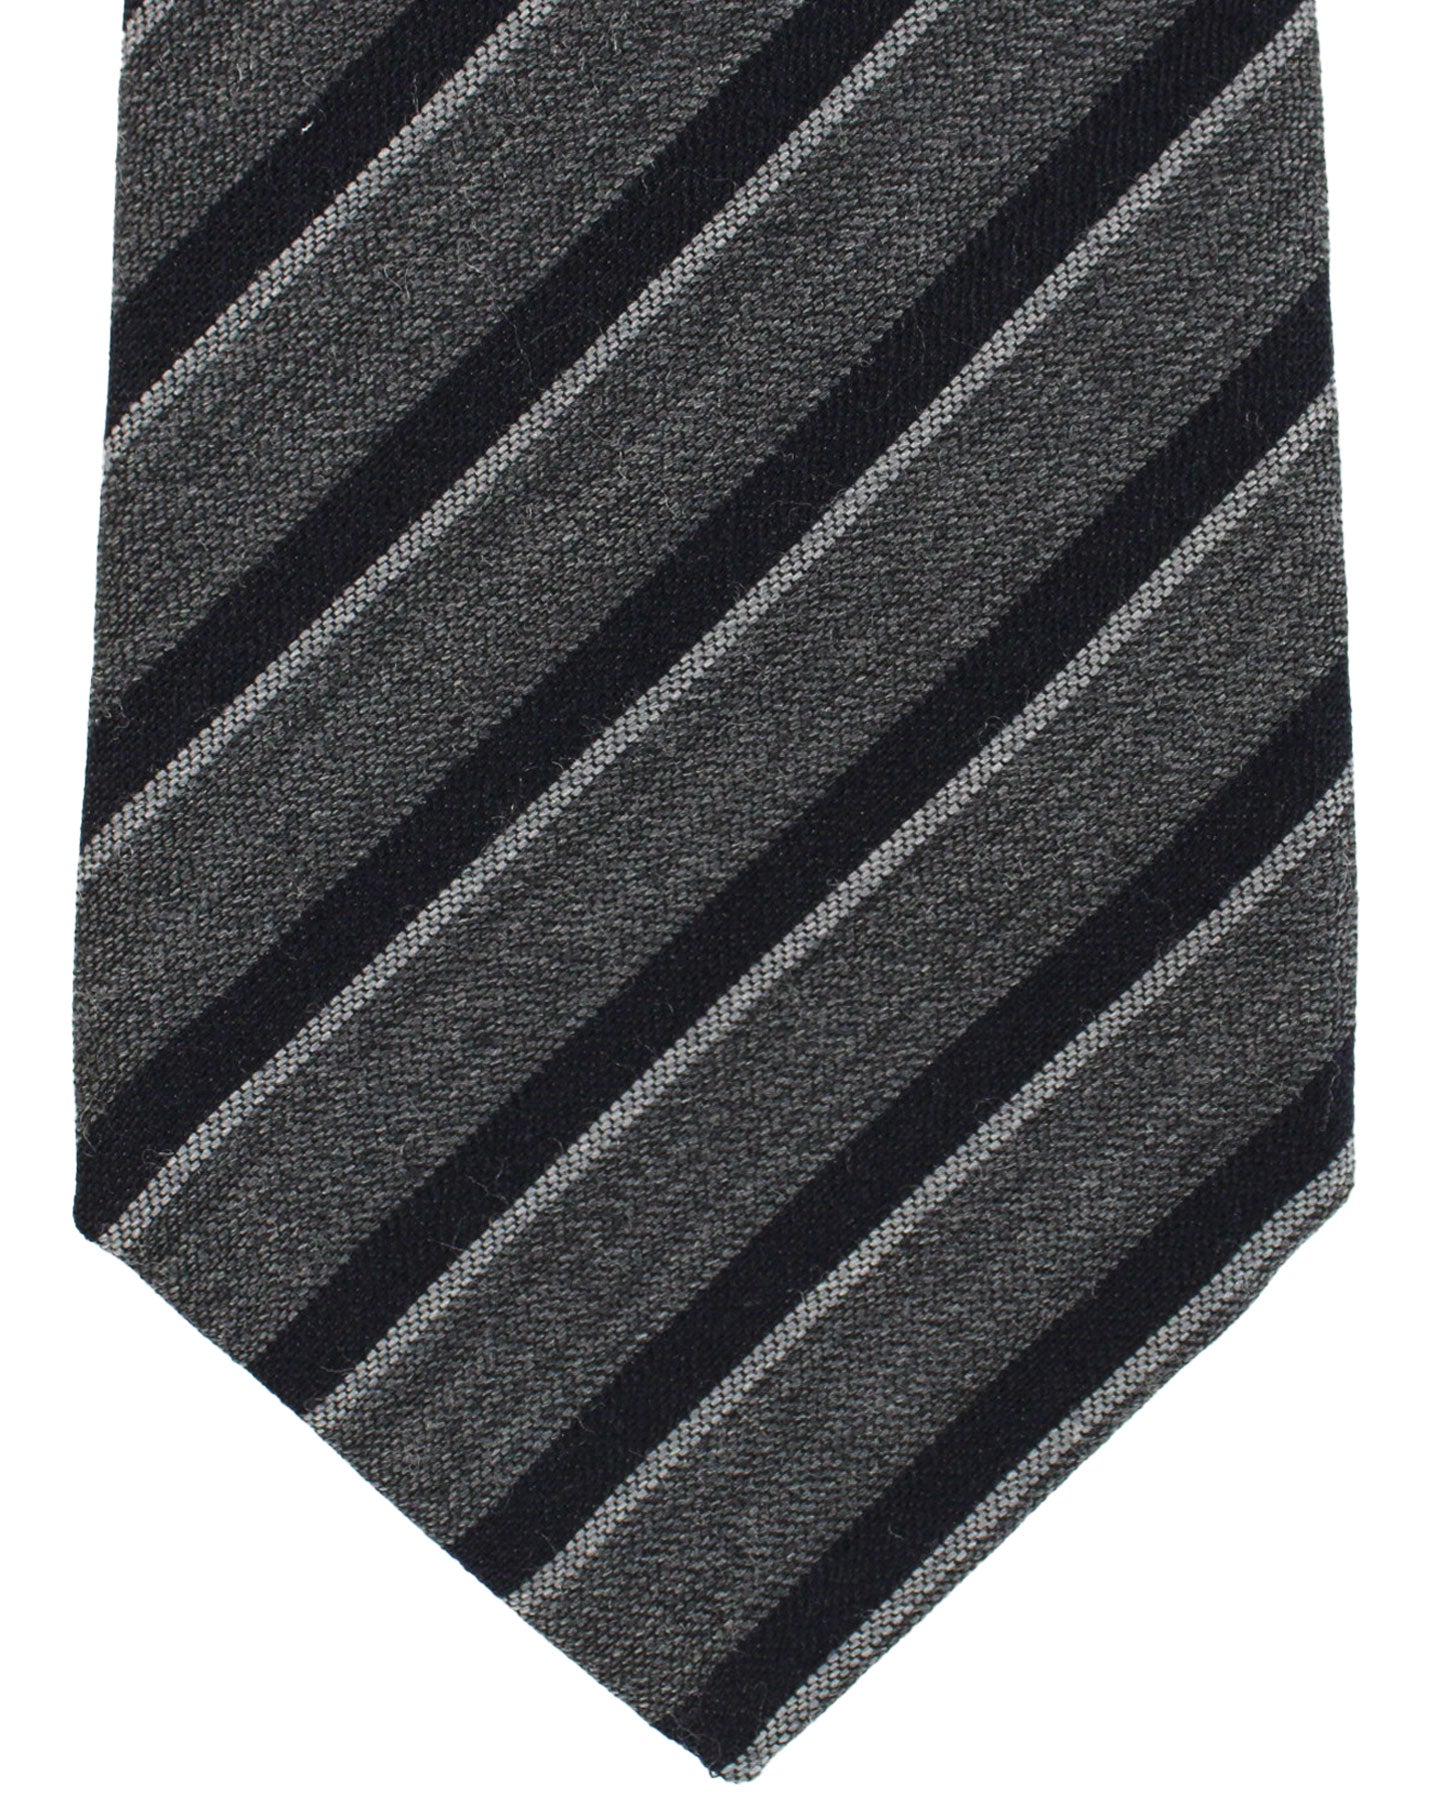 Kiton Wool Silk Tie Gray Stripes Design - Sevenfold Necktie